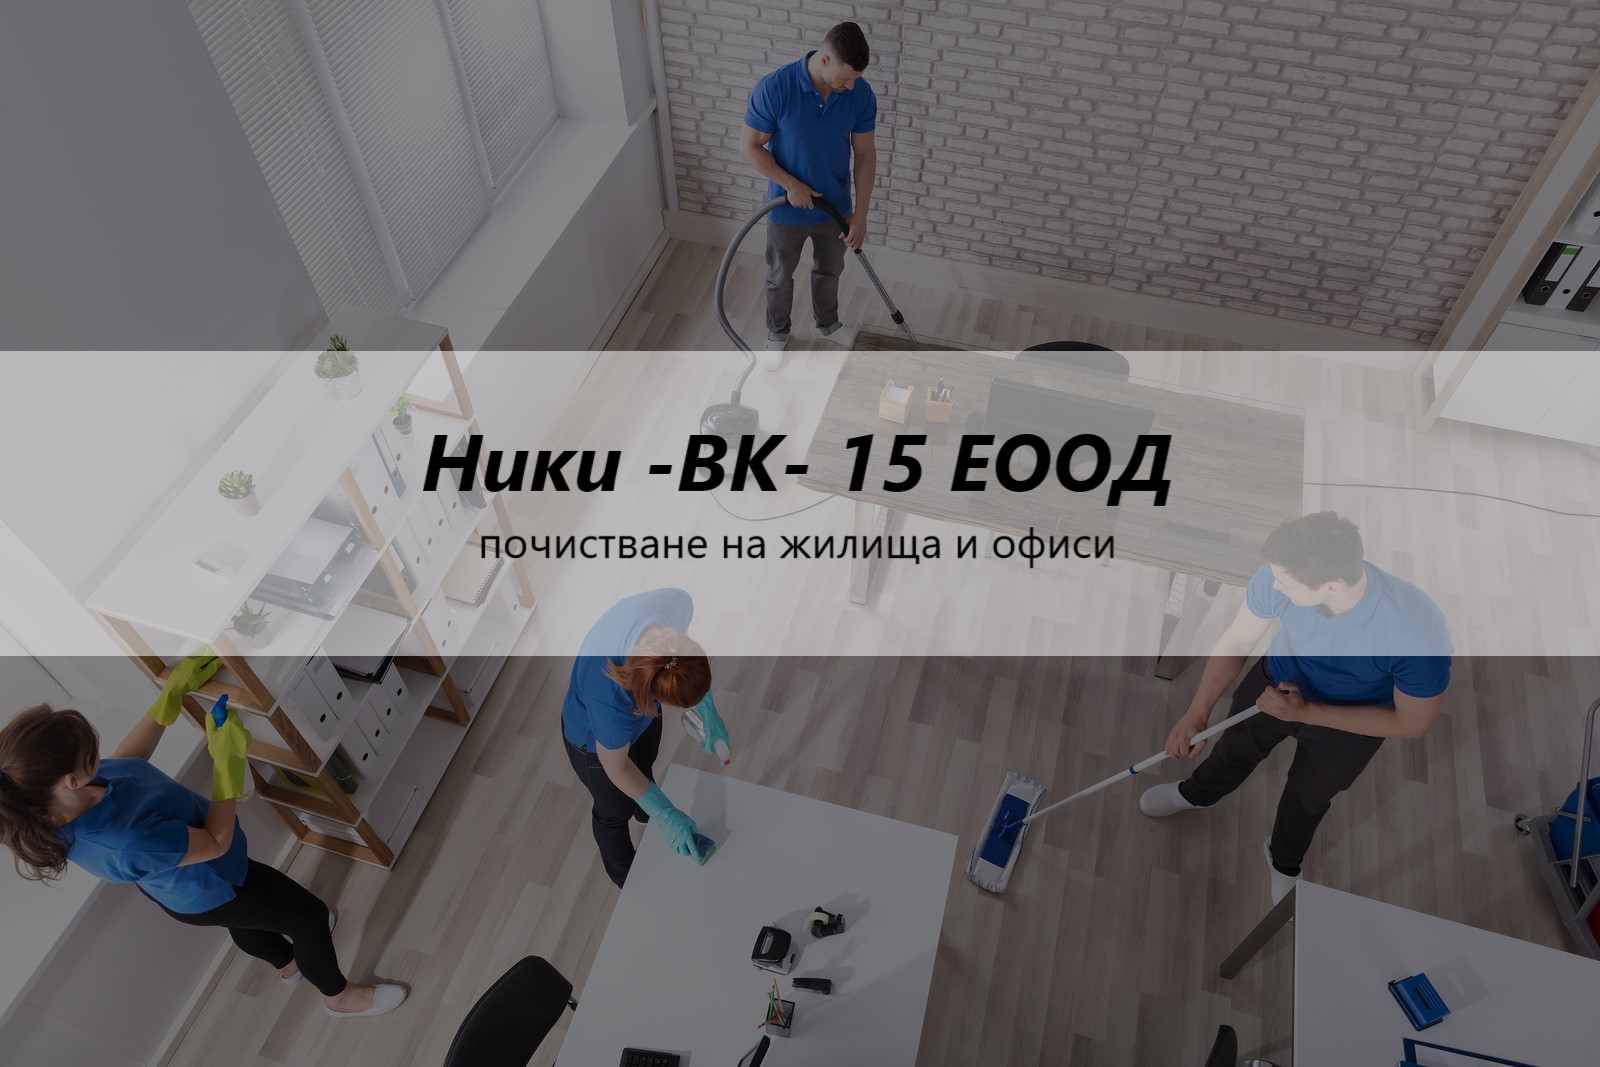 Image for "Ники -ВК-15" ЕООД | почистване на жилища и офиси, Дупница